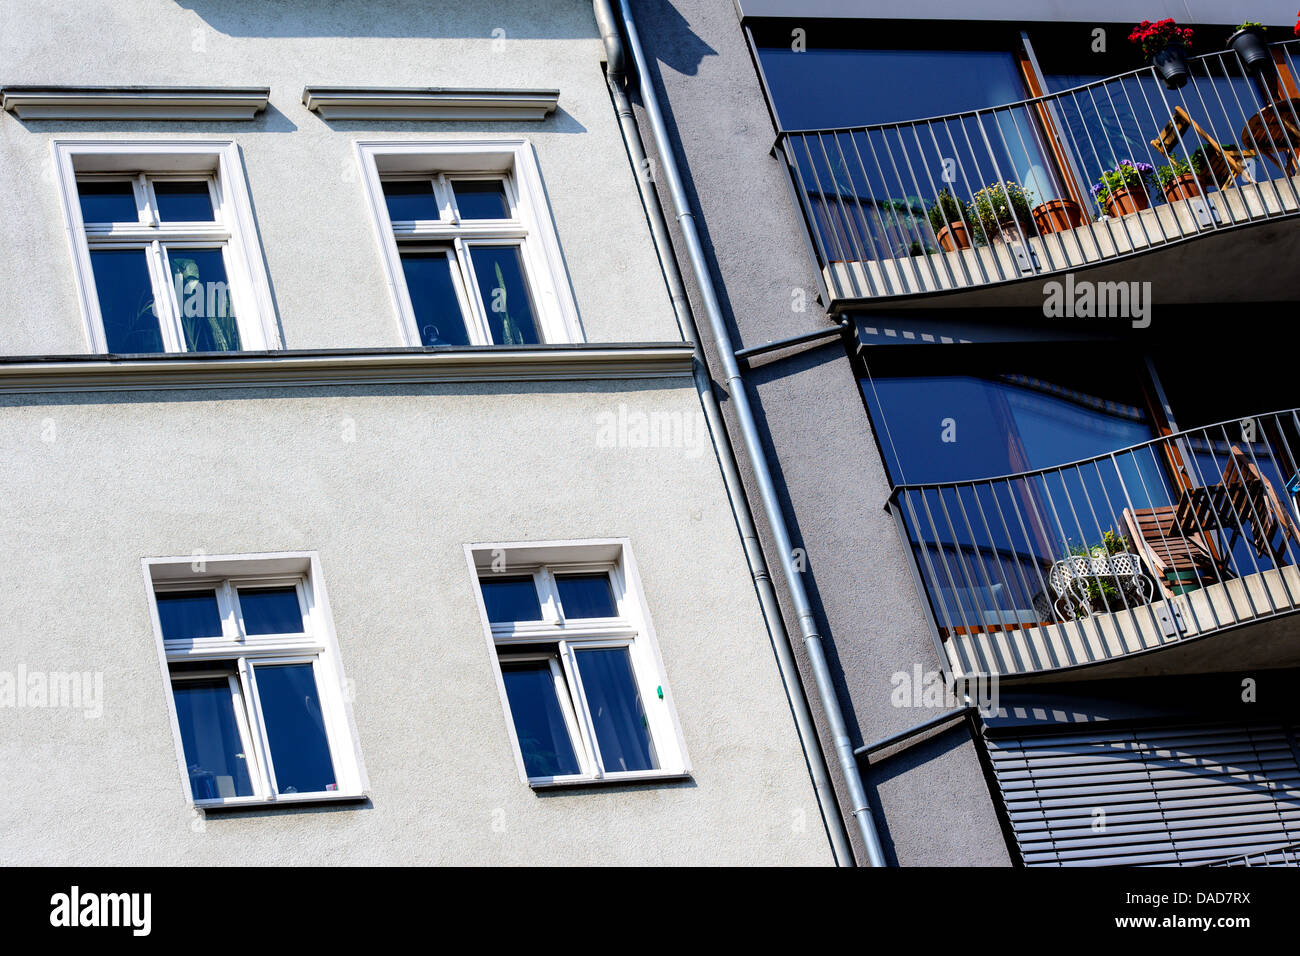 Un nouveau bâtiment de luxe est située à l'angle de la rue Buchholzer Pappelallee / le quartier berlinois de Prenzlauer Berg, à côté d'un ancien bâtiment. Photo : photo alliance / Robert Schlesinger Banque D'Images